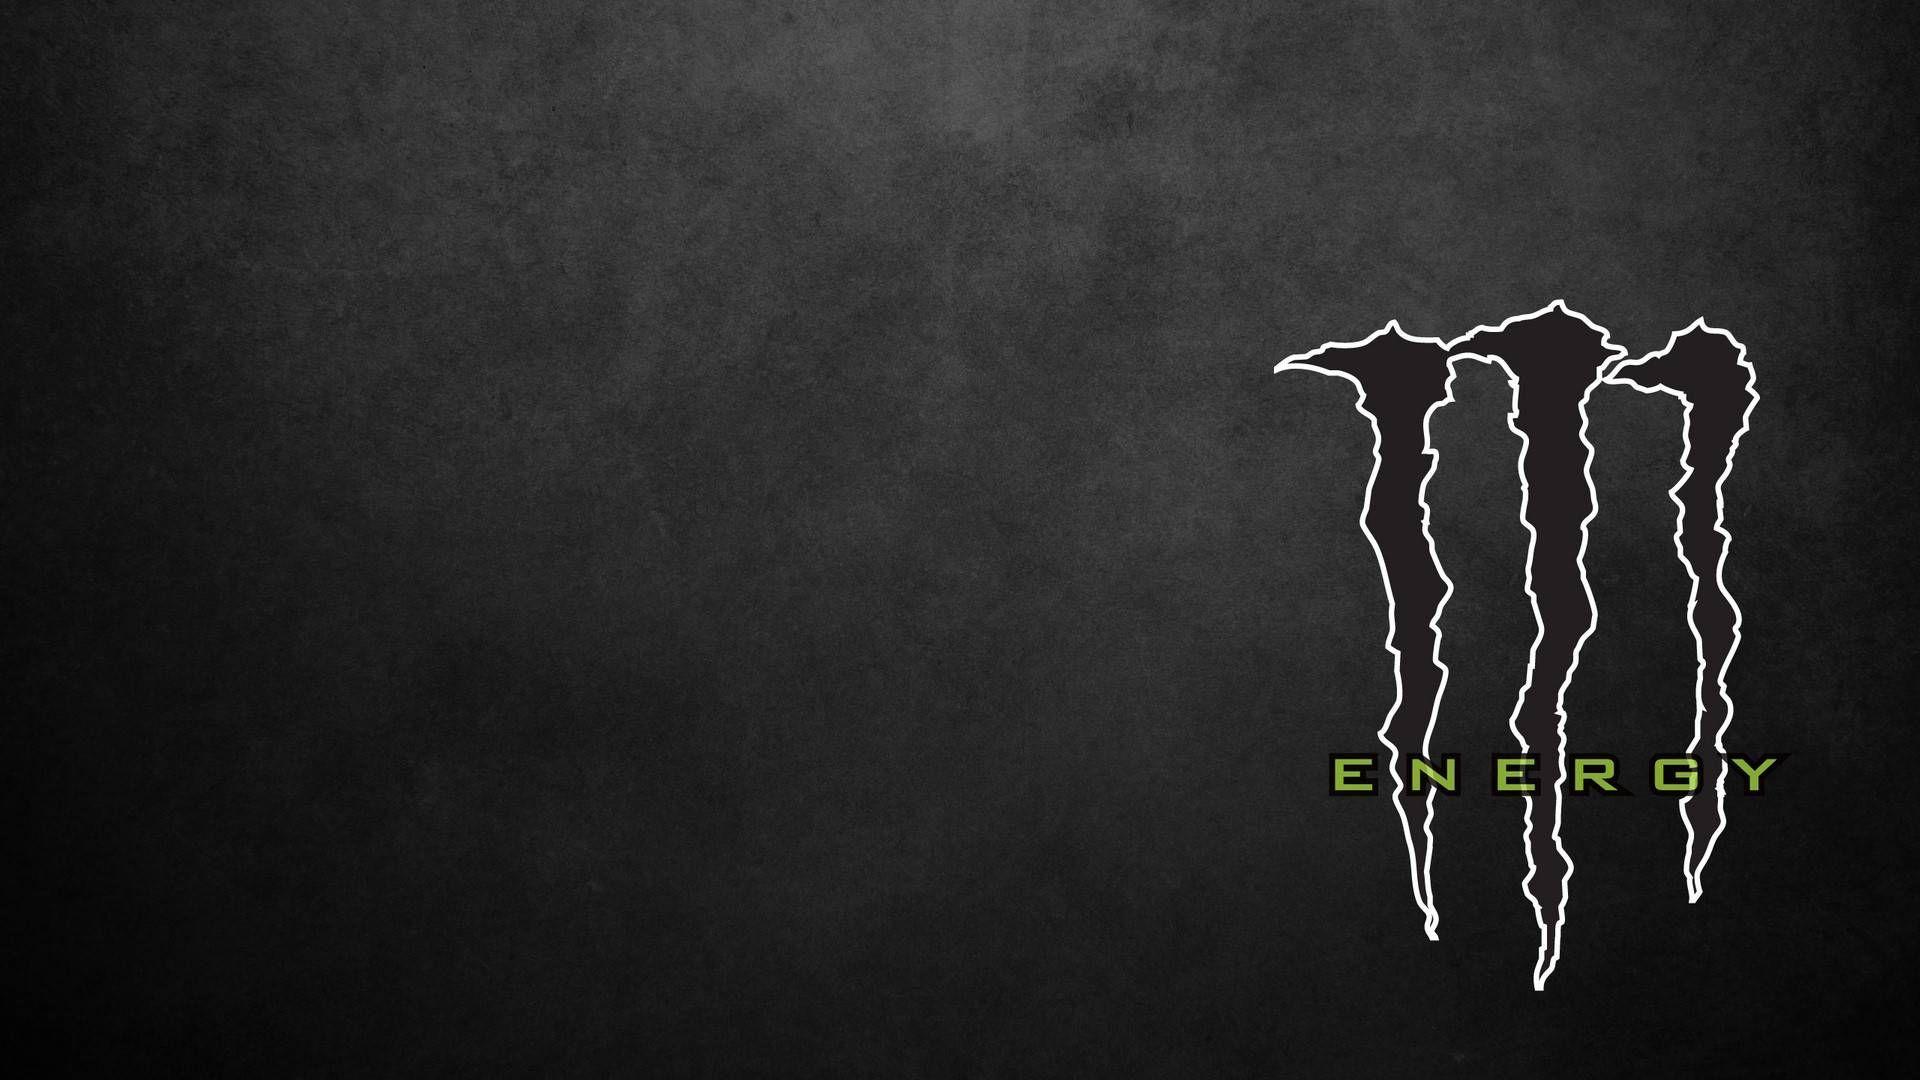 Black and Monster Energy Logo - Monster Energy Logo Black and White | df | Wallpaper, Monster energy ...